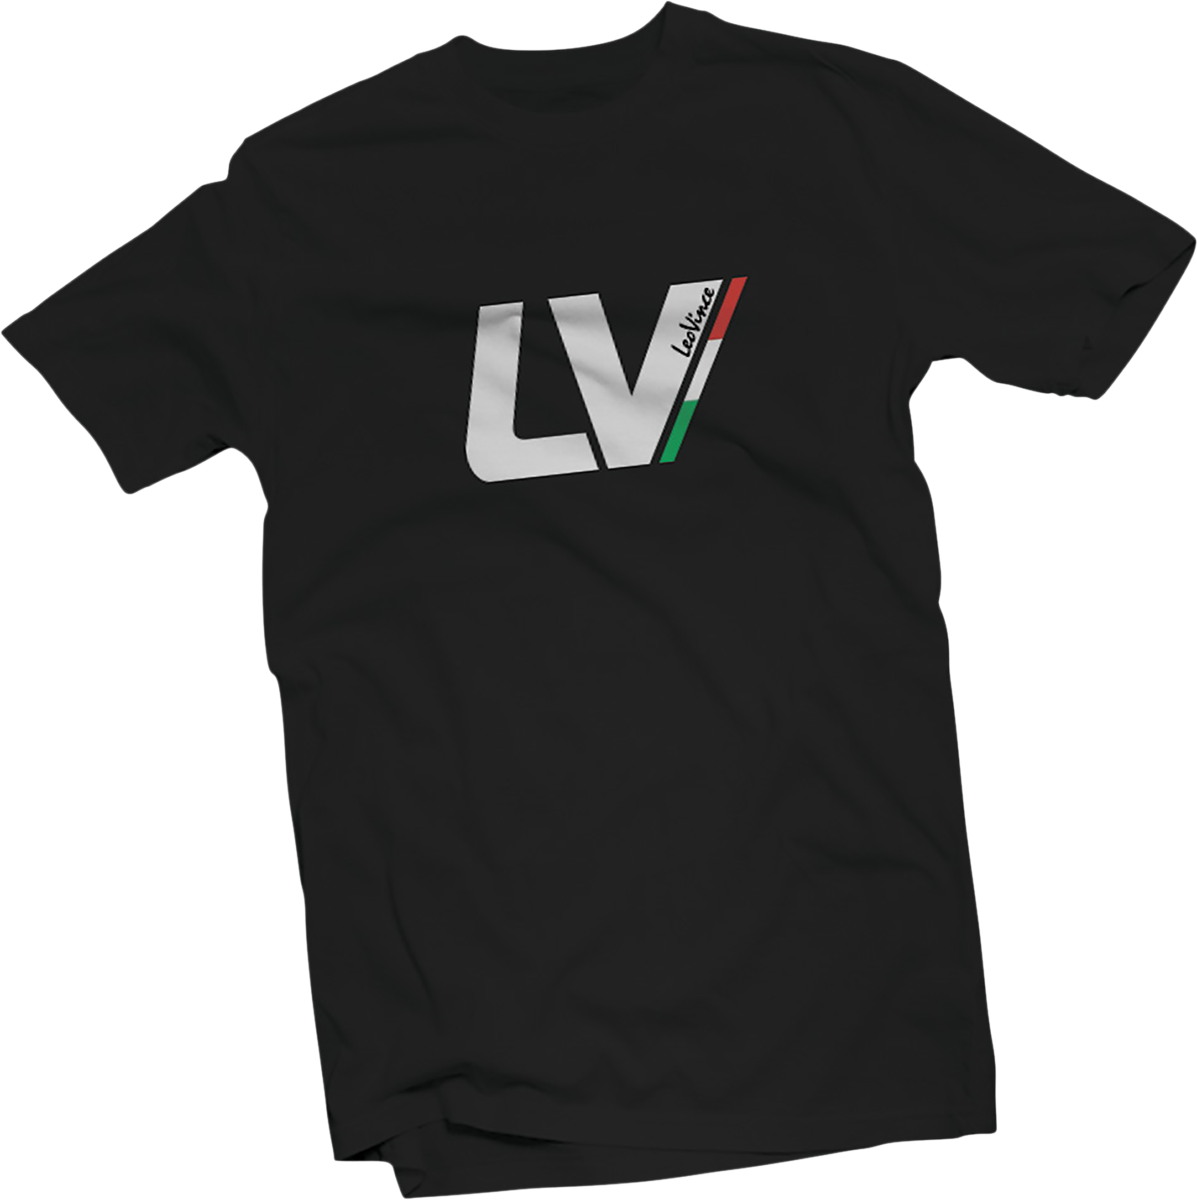 LEOVINCE Leo Vince T-Shirt - Black - Medium 417908M